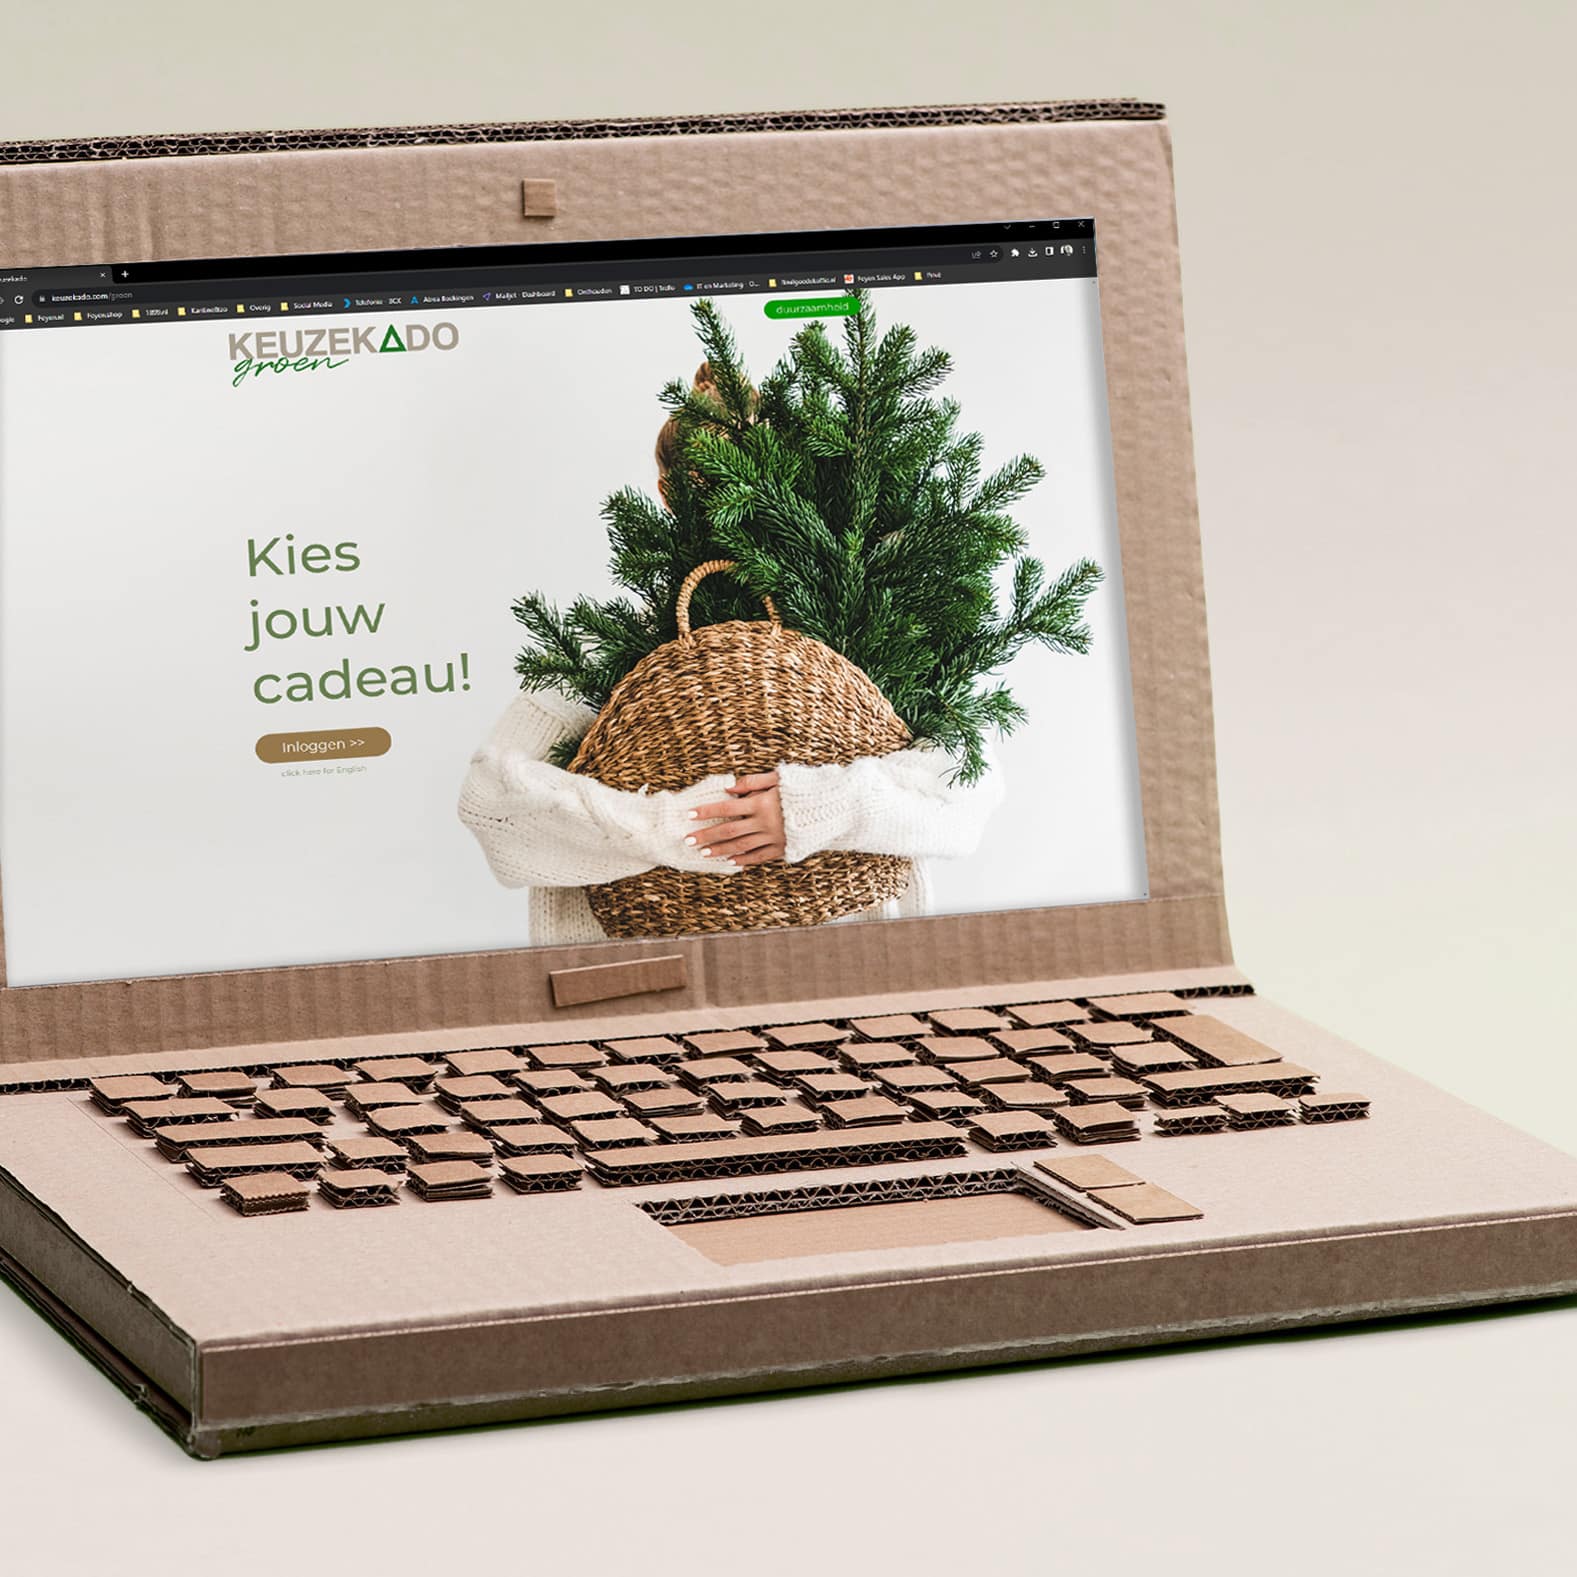 Kartonnen laptop met een geopende website van Keuzekado Groen